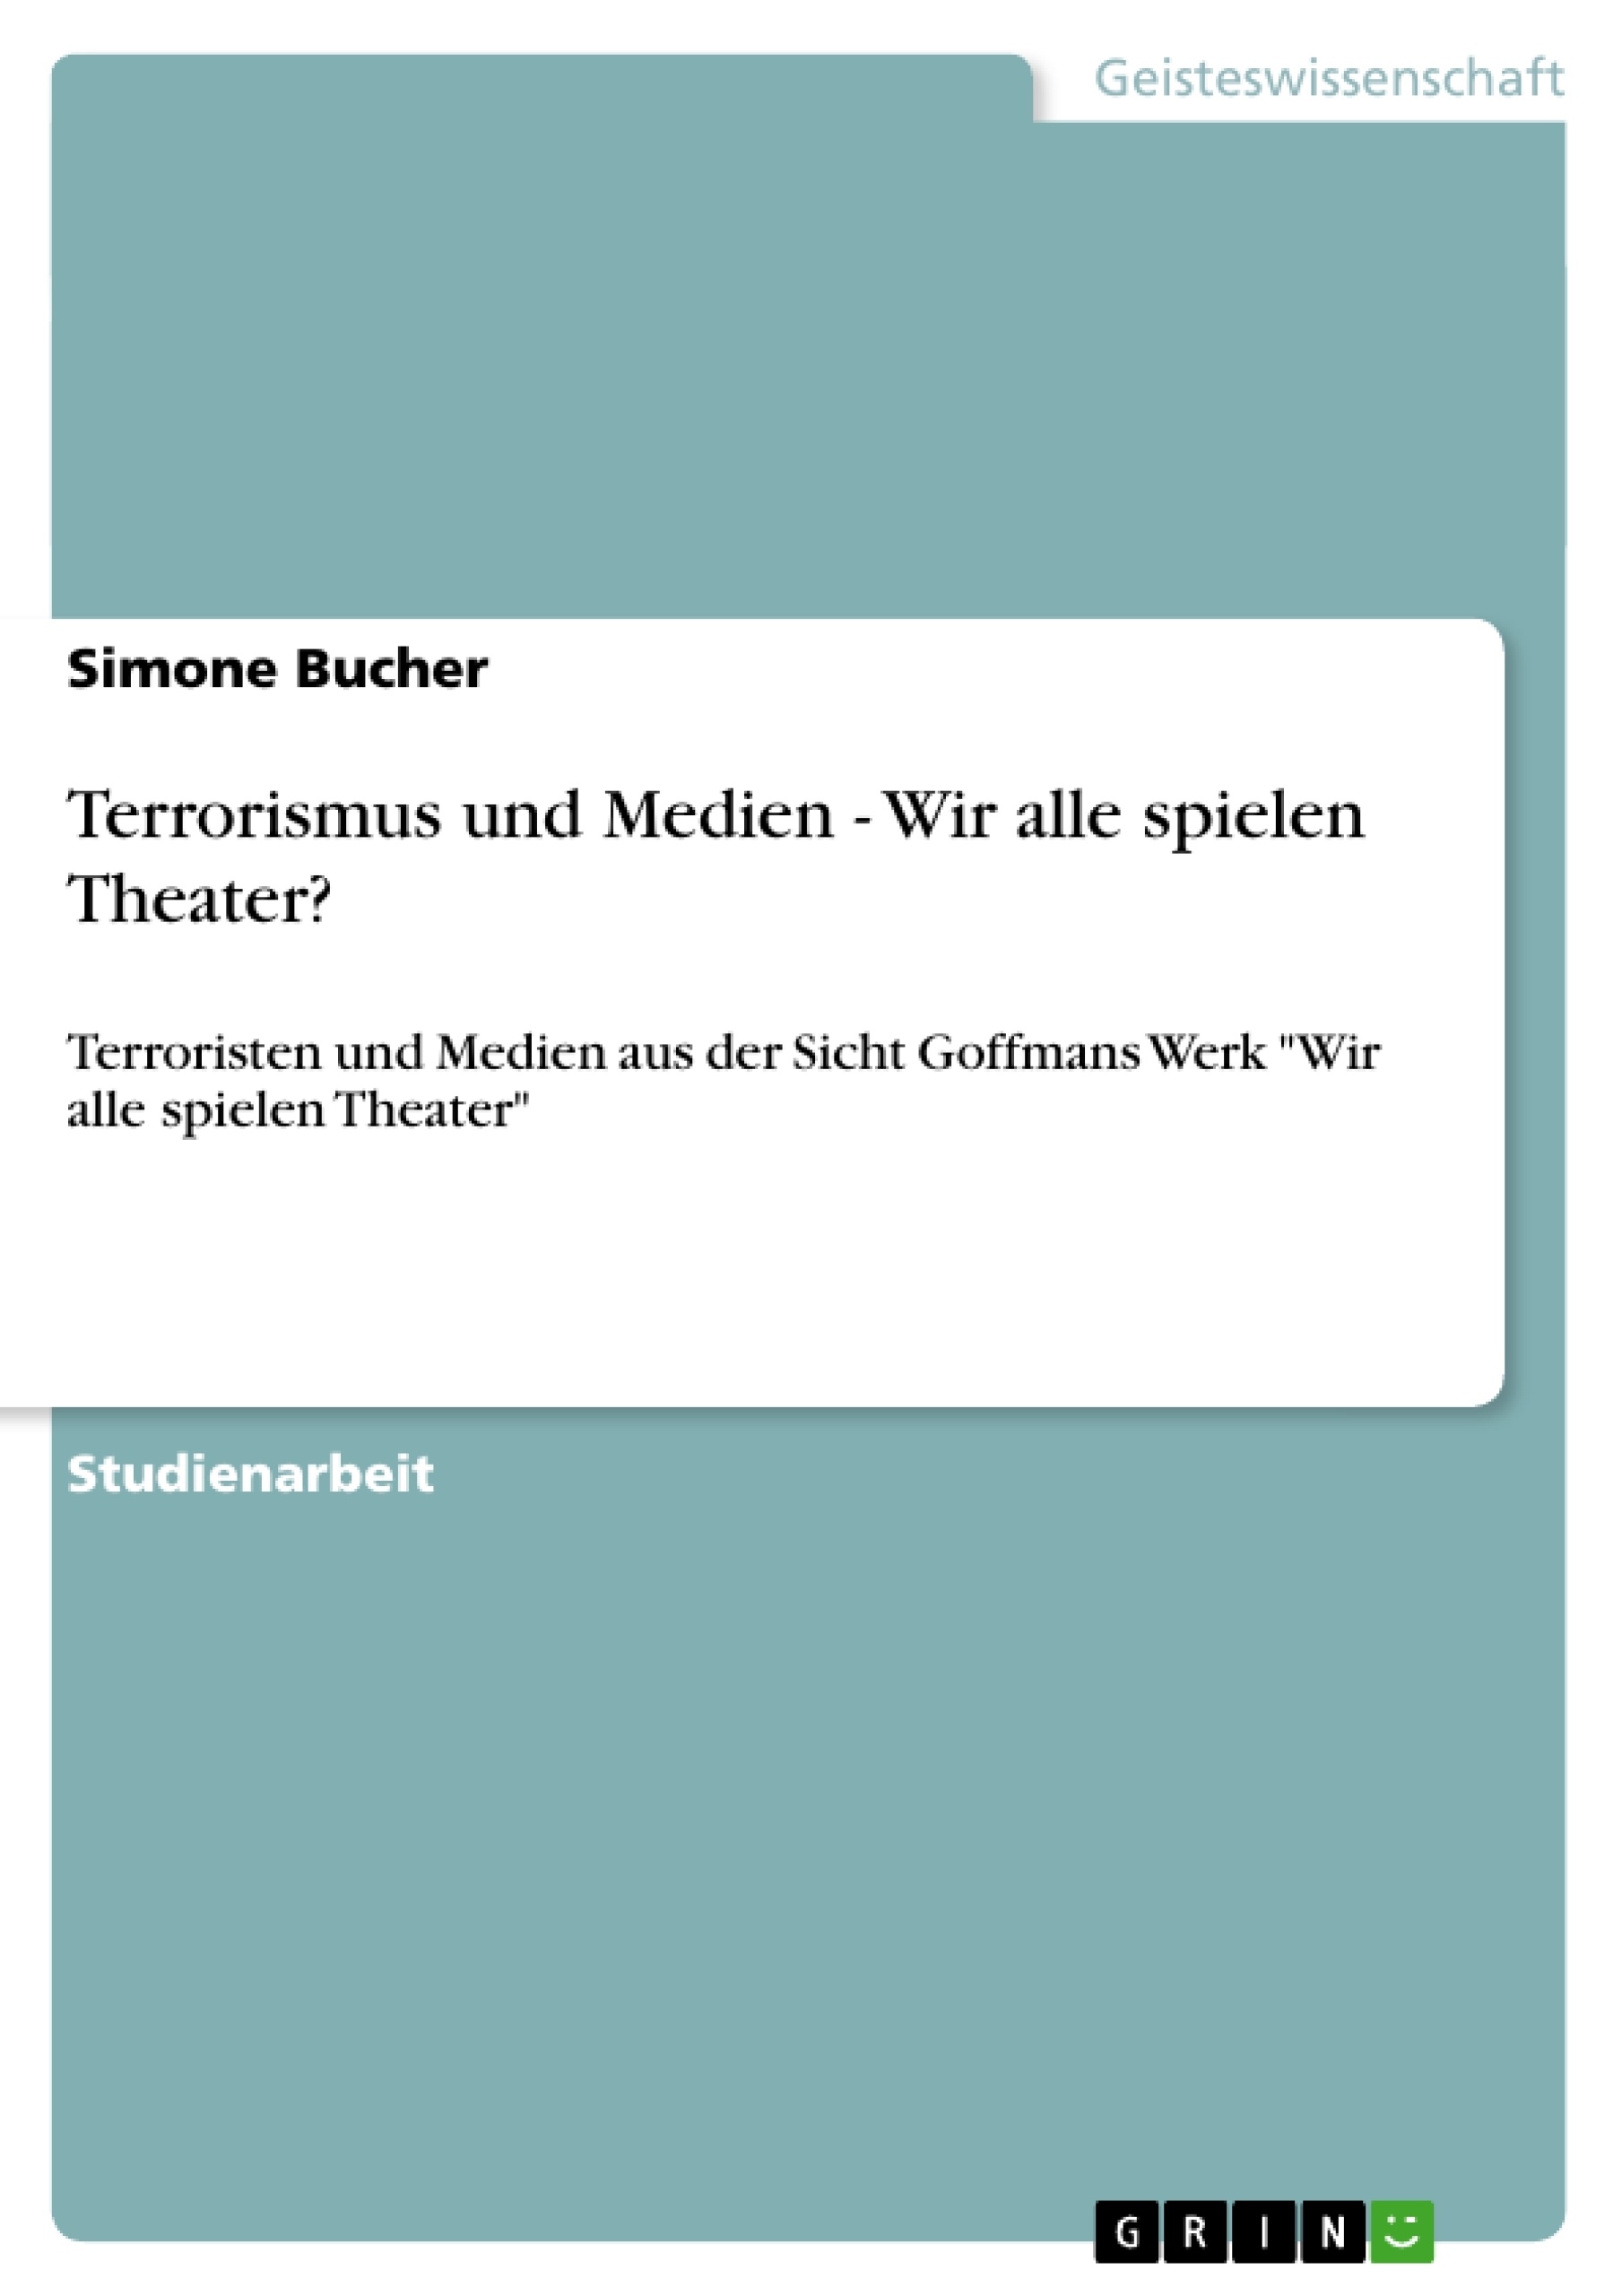 Title: Terrorismus und Medien - Wir alle spielen Theater?